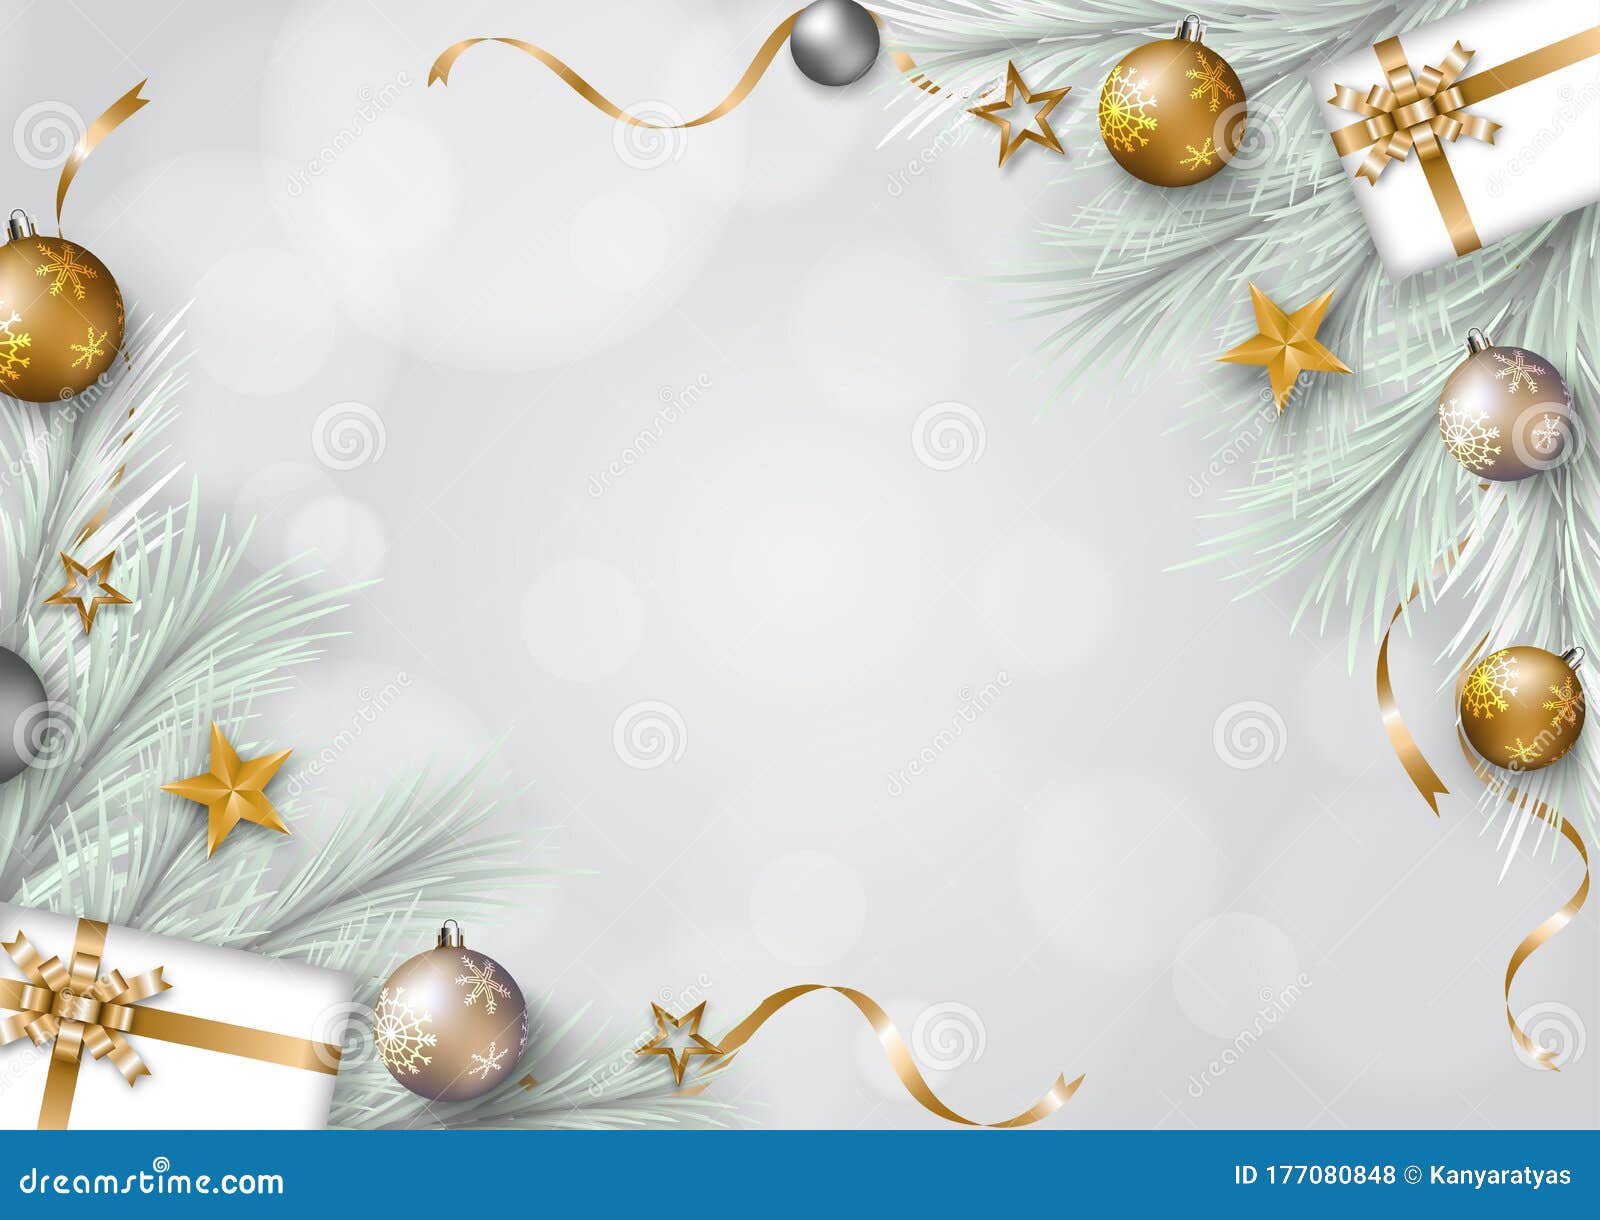 Nền Giáng Sinh xám với đường viền cây thông, hộp quà là tổng hợp của những hình ảnh Giáng Sinh đậm chất truyền thống. Nền xám tinh tế song với đường viền cây thông và hộp quà đầy màu sắc, tạo ra một không gian lễ hội ấm áp và đầy cảm hứng. Nếu bạn muốn tìm kiếm một bức ảnh lễ hội truyền thống đầy màu sắc, hãy chọn hình ảnh này làm nguồn cảm hứng cho mình.